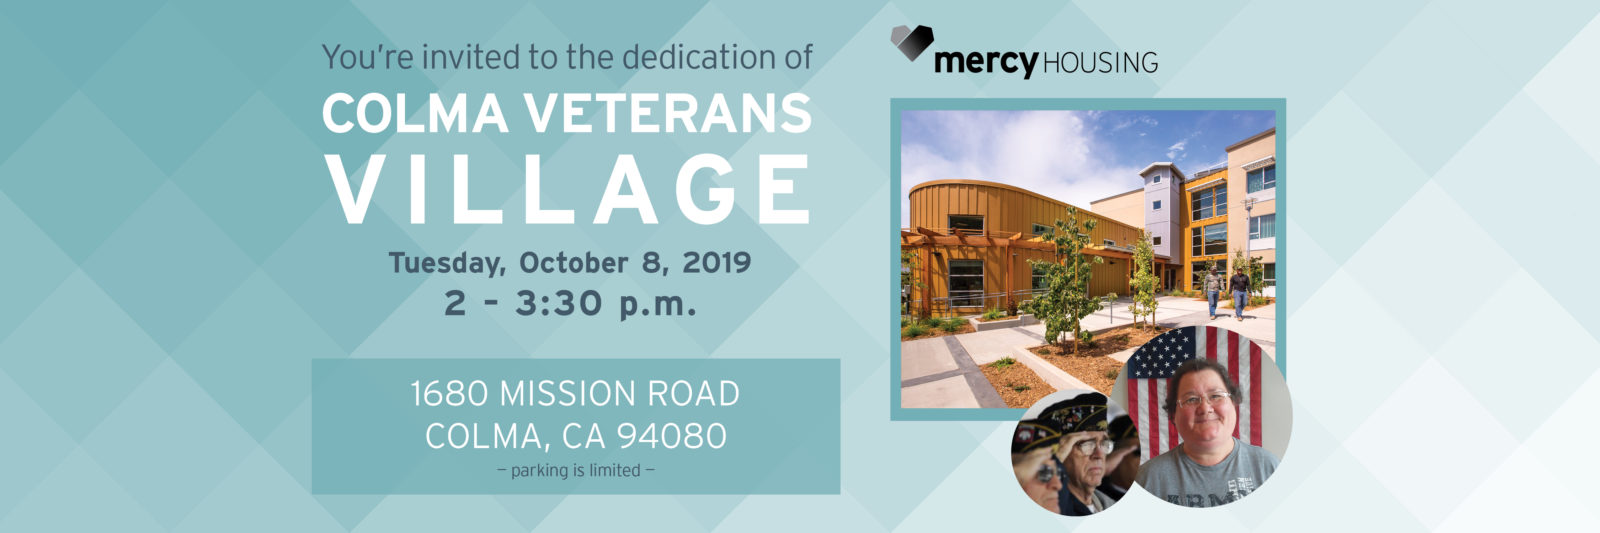 Colma Veterans Village Dedication | October 8 2-3:30pm